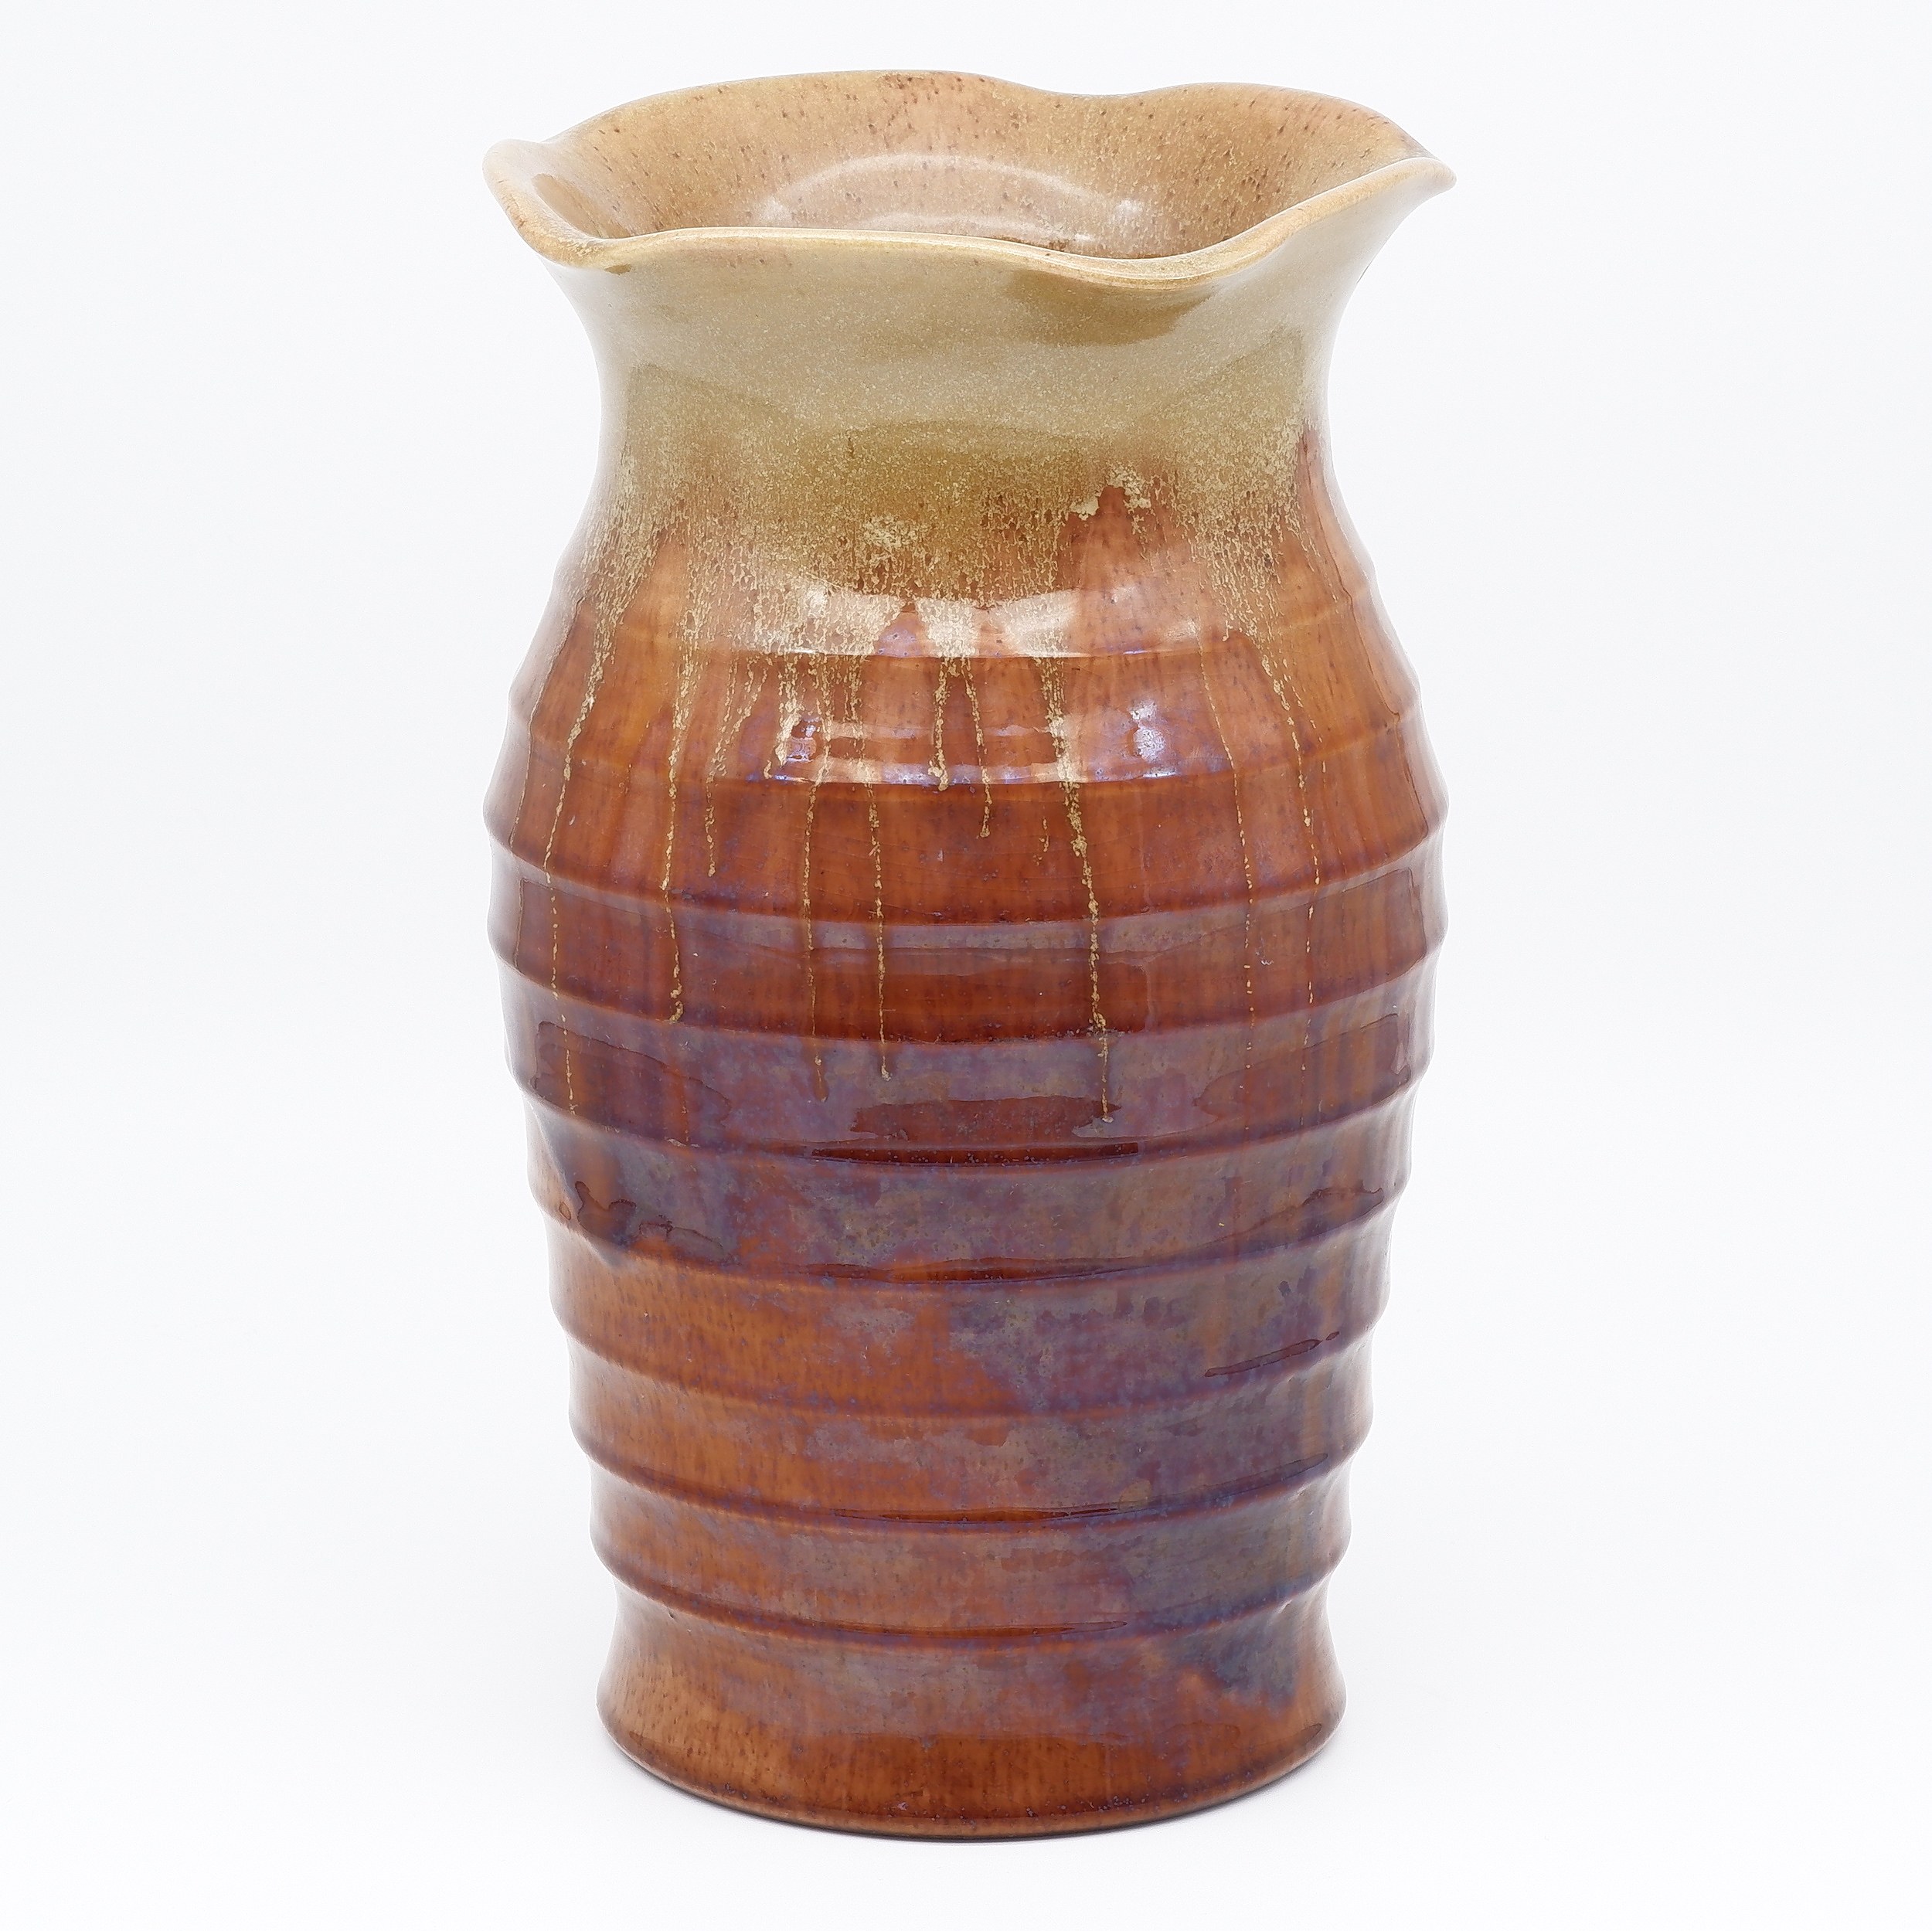 'Australian Remued Pottery Vase'